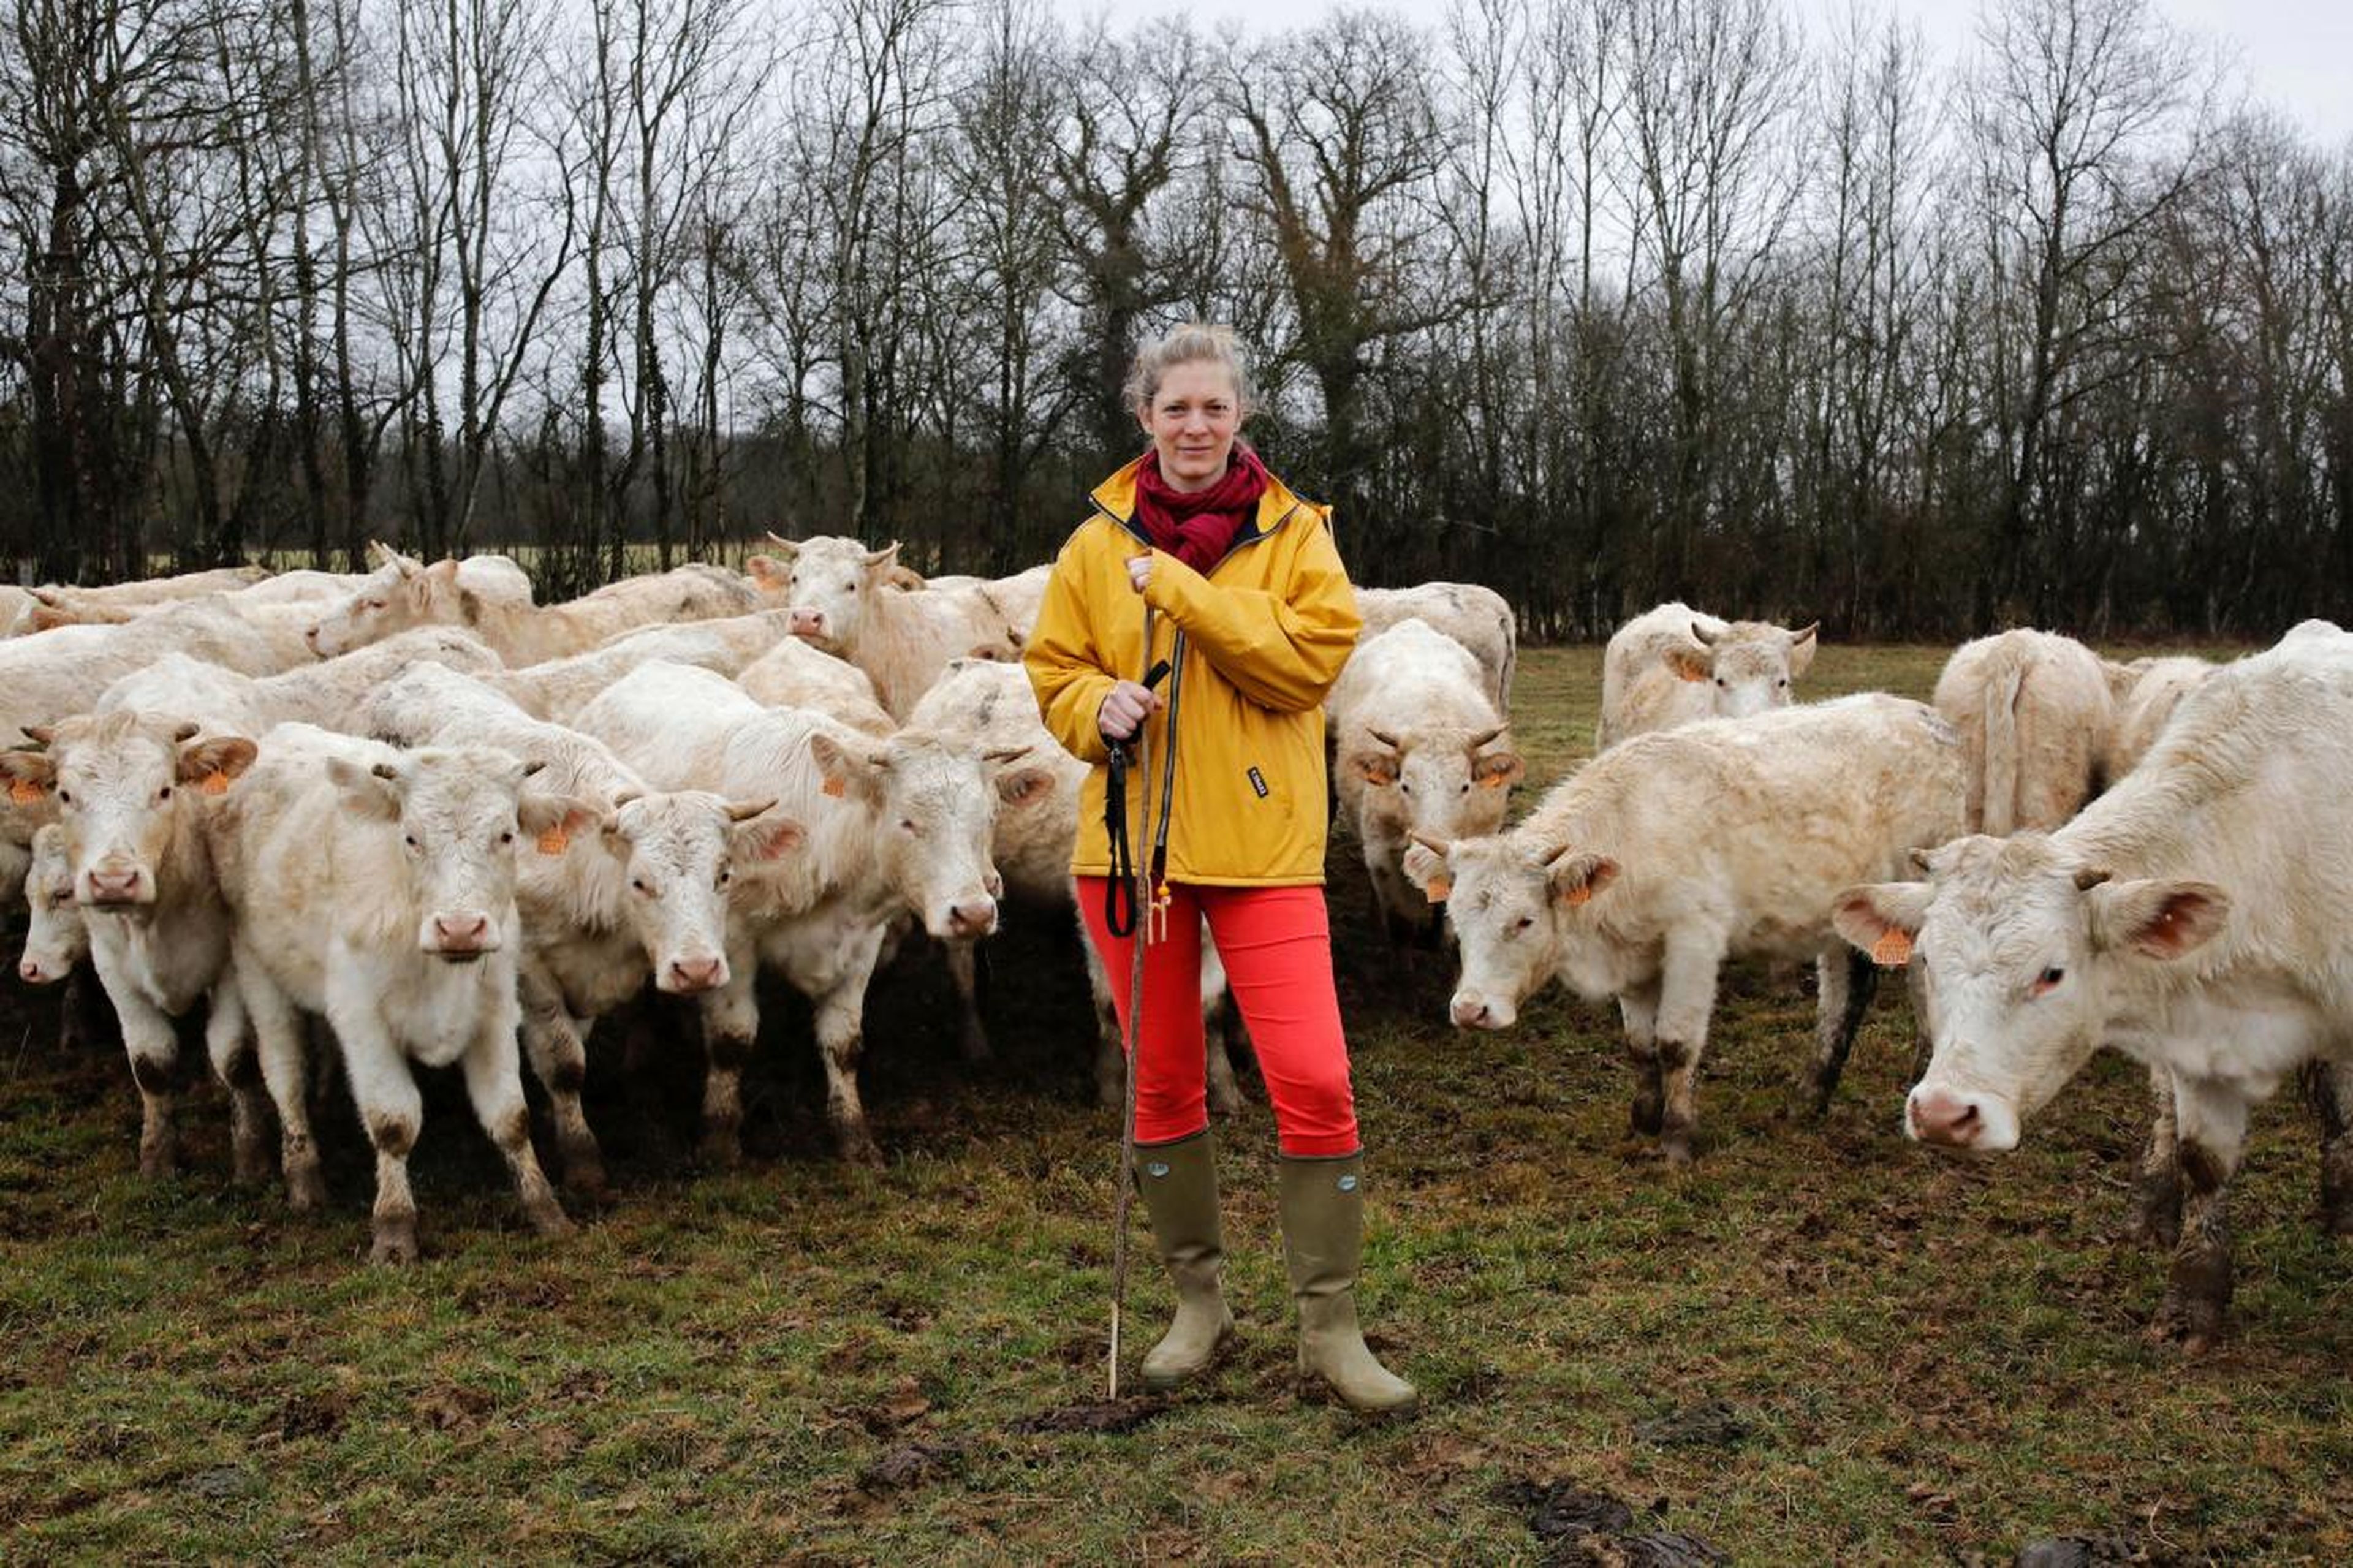 Emilie Jeannin, de 37 años, ganadera con sus vacas Charolais en Beurizot, Francia: "Una vez no pude evitar reírme cuando un asesor agrícola me preguntó dónde estaba el jefe, mientras yo estaba parada justo frente a él."